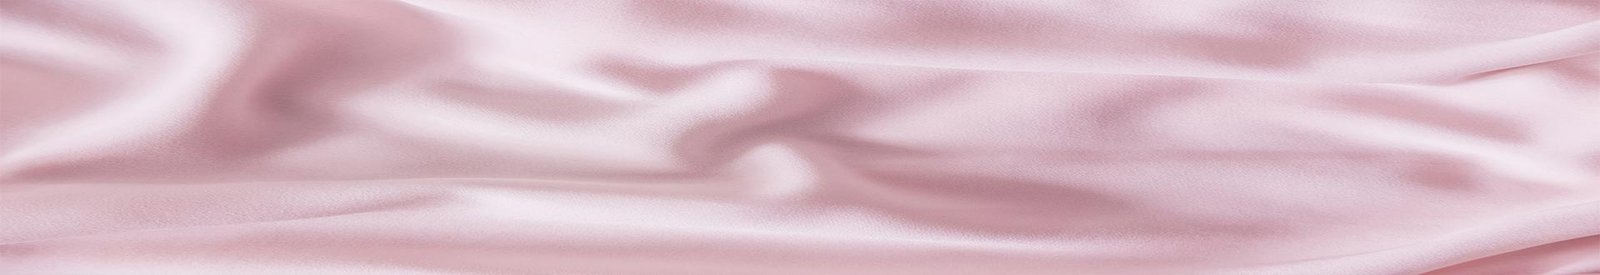 silkeep-roze-svila-materijal